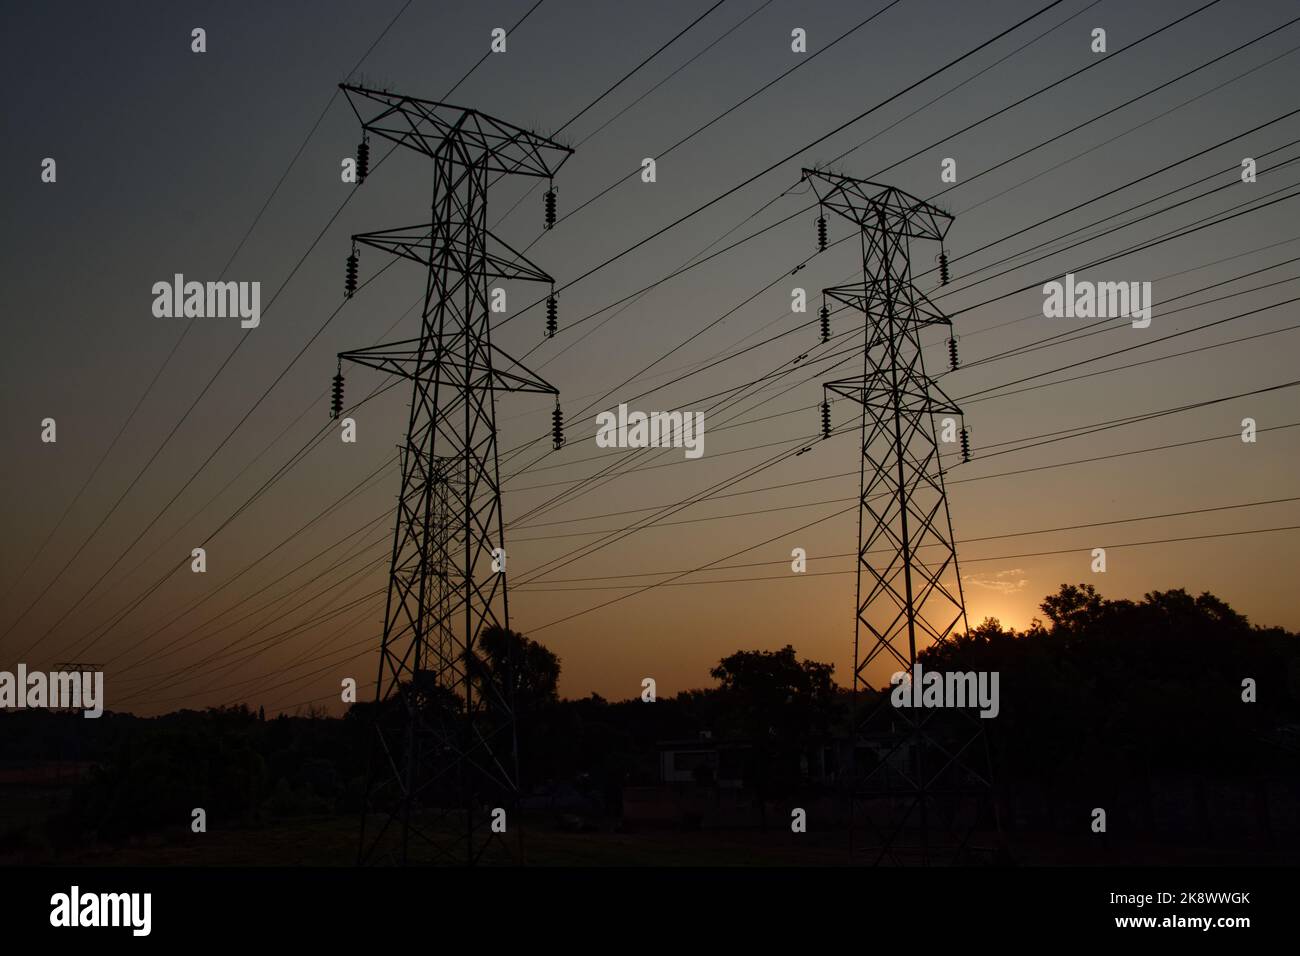 Zwei Strommasten von Electrical Power wurden gegen den goldenen Abendhimmel silhouettiert. In ländlicher Umgebung. Stockfoto